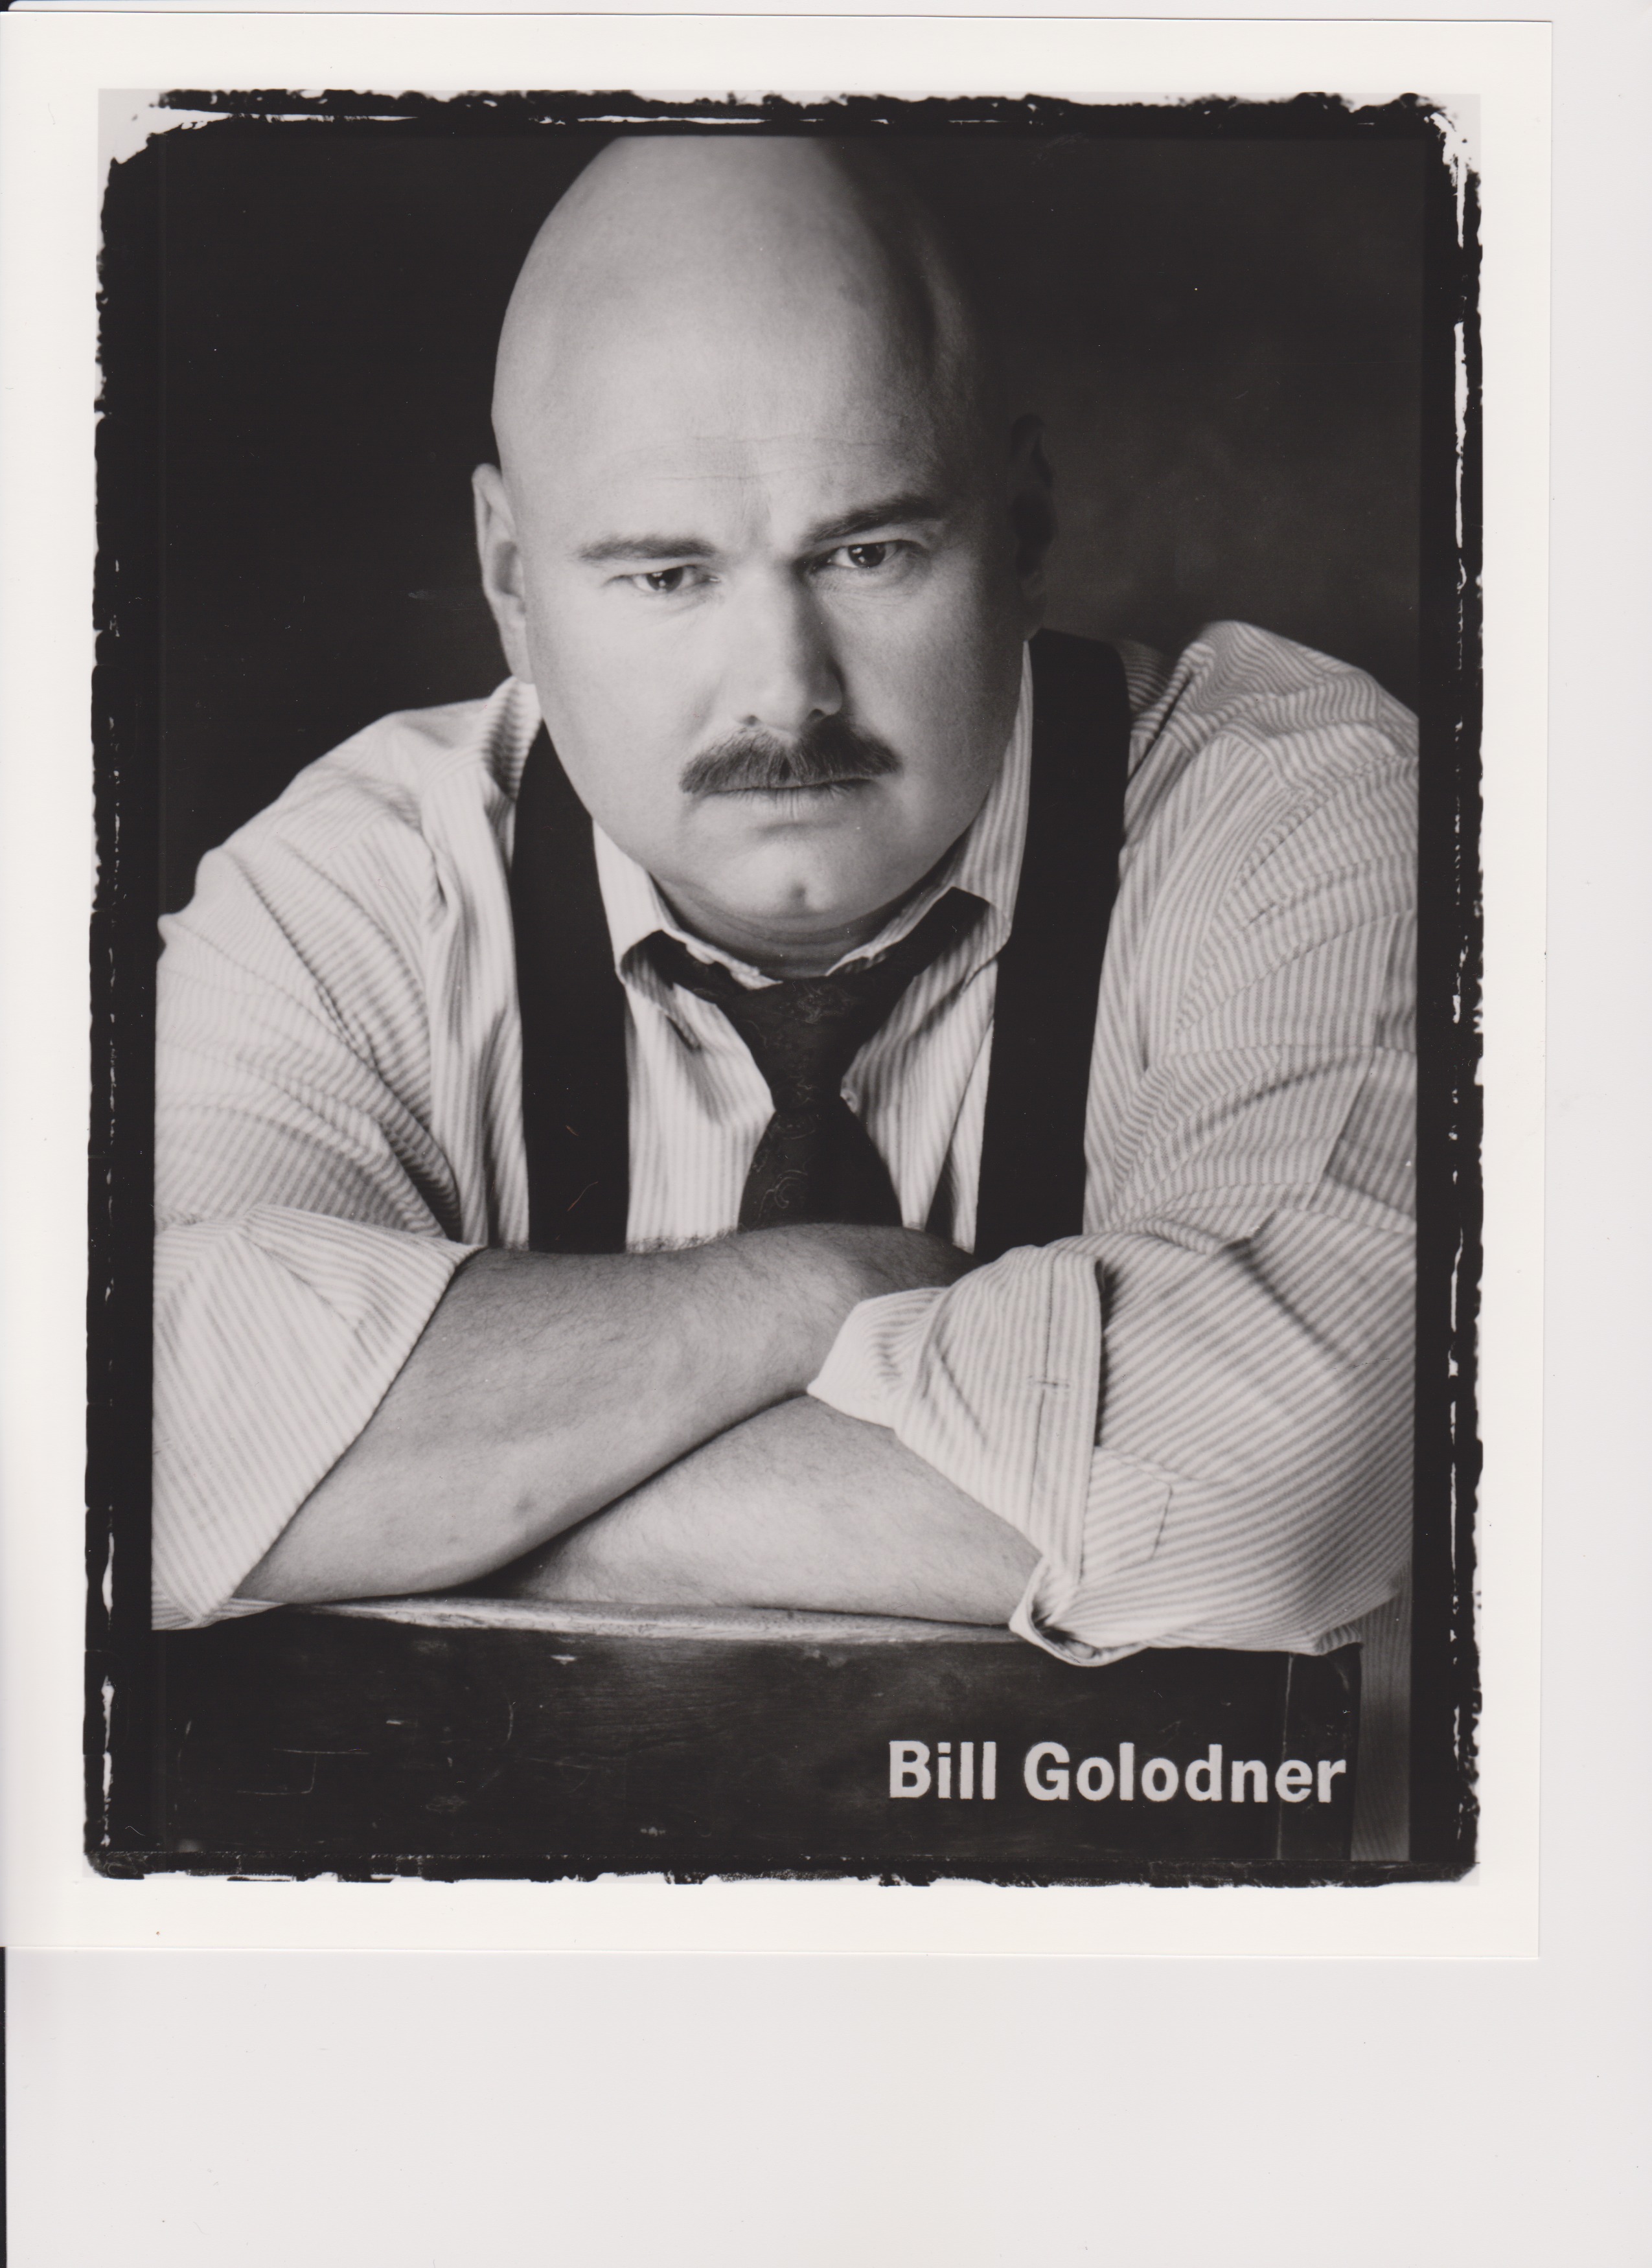 Bill Golodner